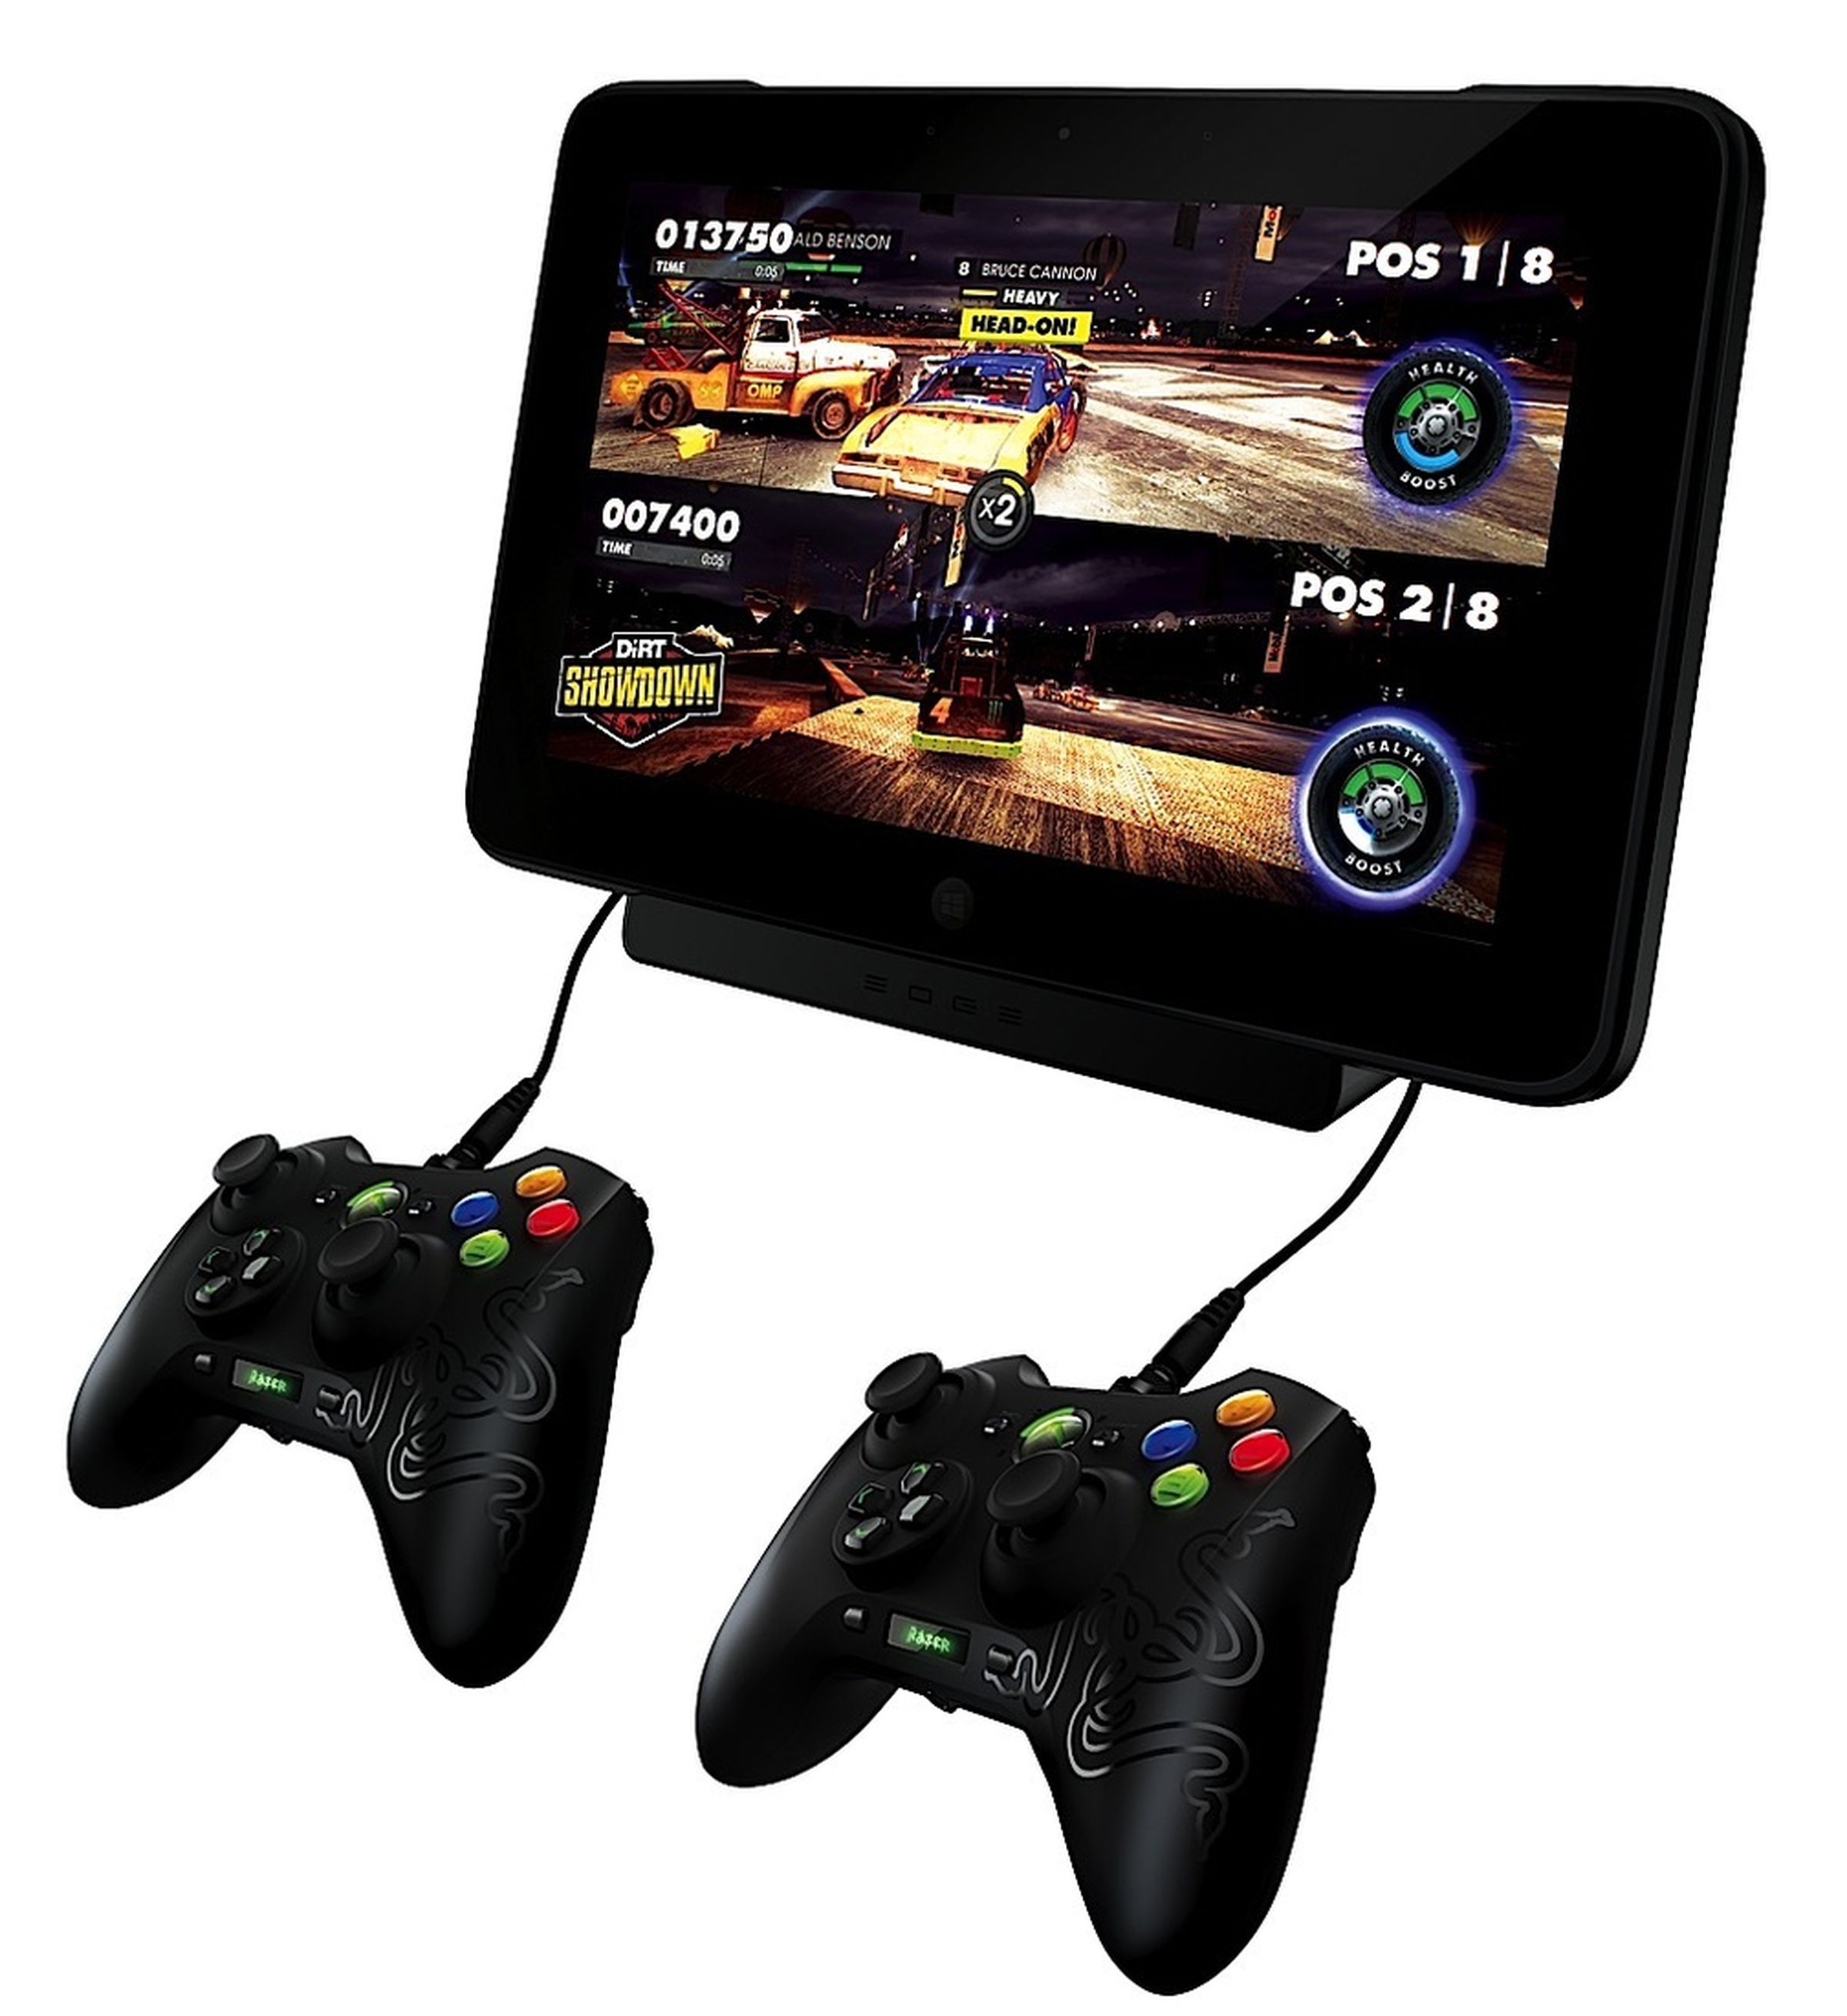 Razer Edge convertible gaming tablet photos